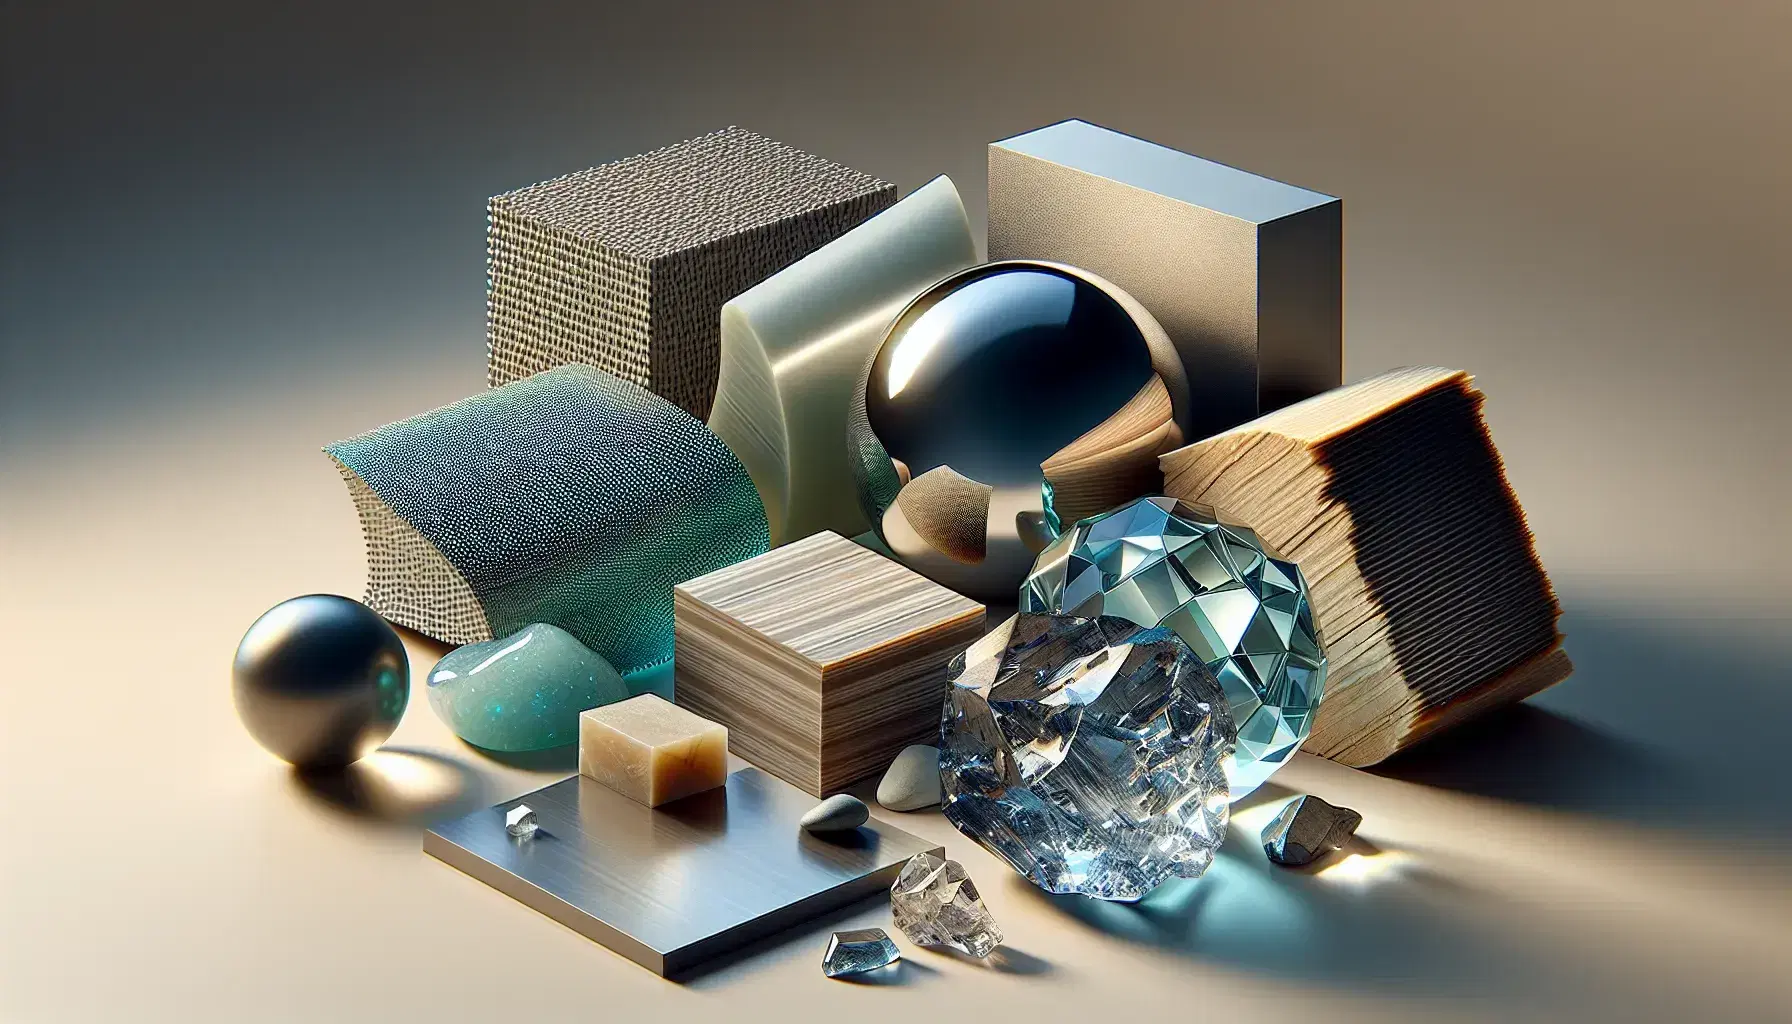 Materiales variados sobre superficie neutra incluyendo metal pulido, plástico translúcido, cerámica vidriada, madera con vetas, fibra de carbono y cristal de cuarzo.